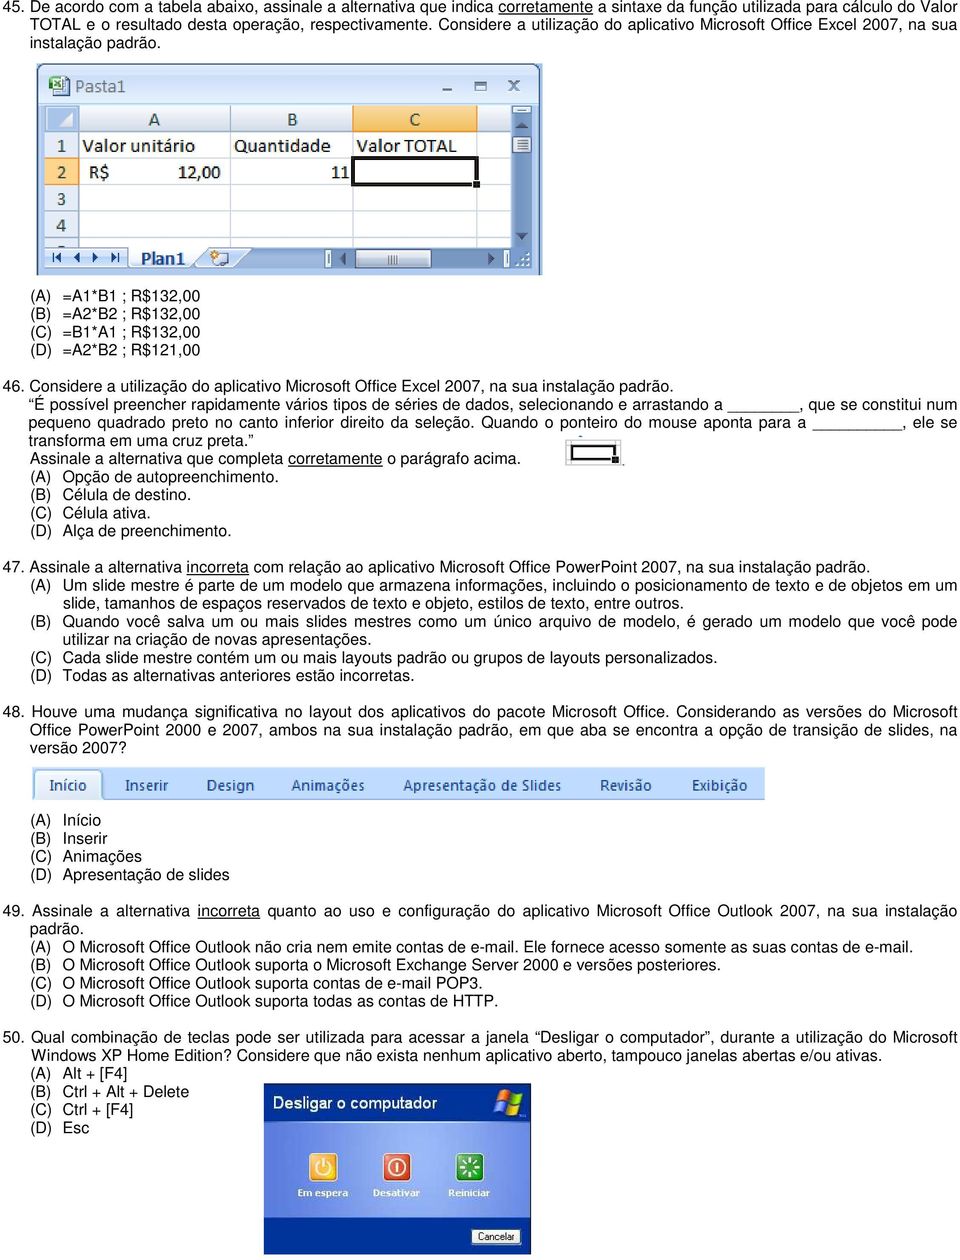 Considere a utilização do aplicativo Microsoft Office Excel 2007, na sua instalação padrão.